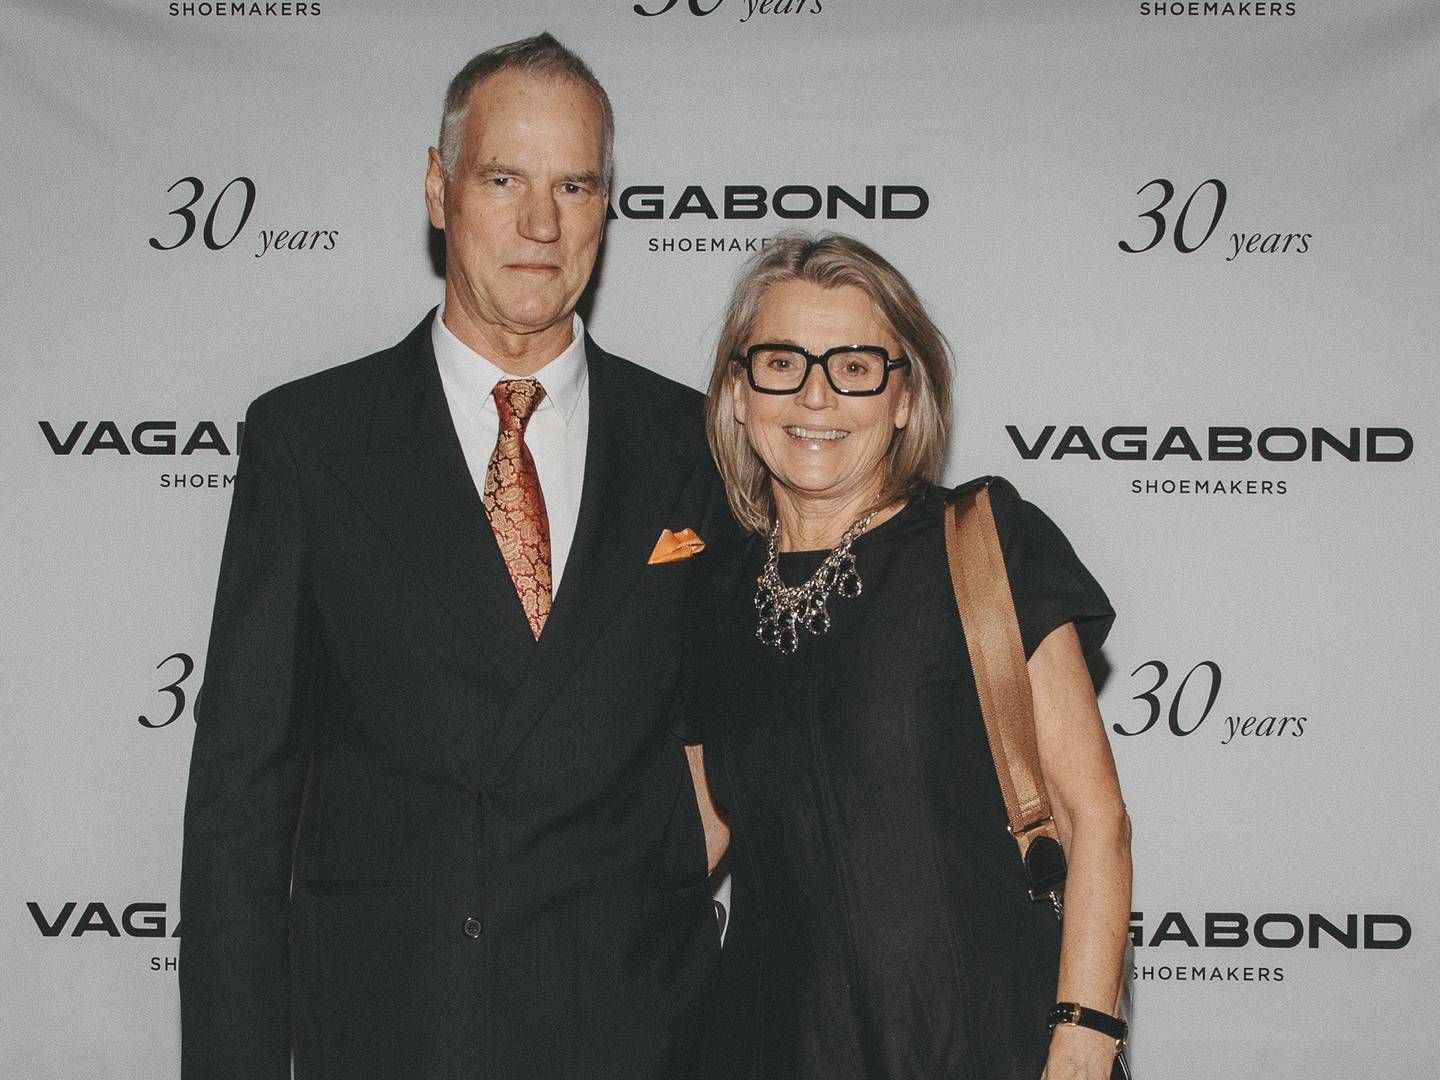 Grunnleggerne av Vagabond Shoemakers Mats Nilsson og Marie Nilsson Peterzén. | Foto: Pressefoto